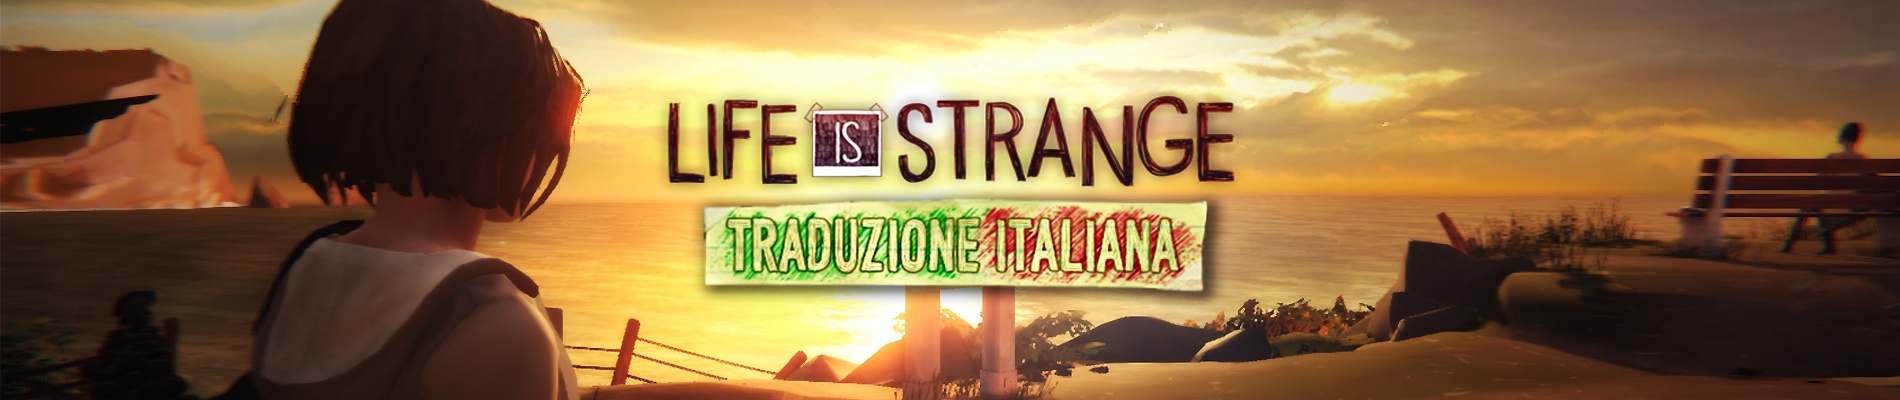 FenixTM rilascia Life Is Strange Episode 1 − Chrysalis in italiano: Tech Scene intervista FixX1983, ideatore del progetto